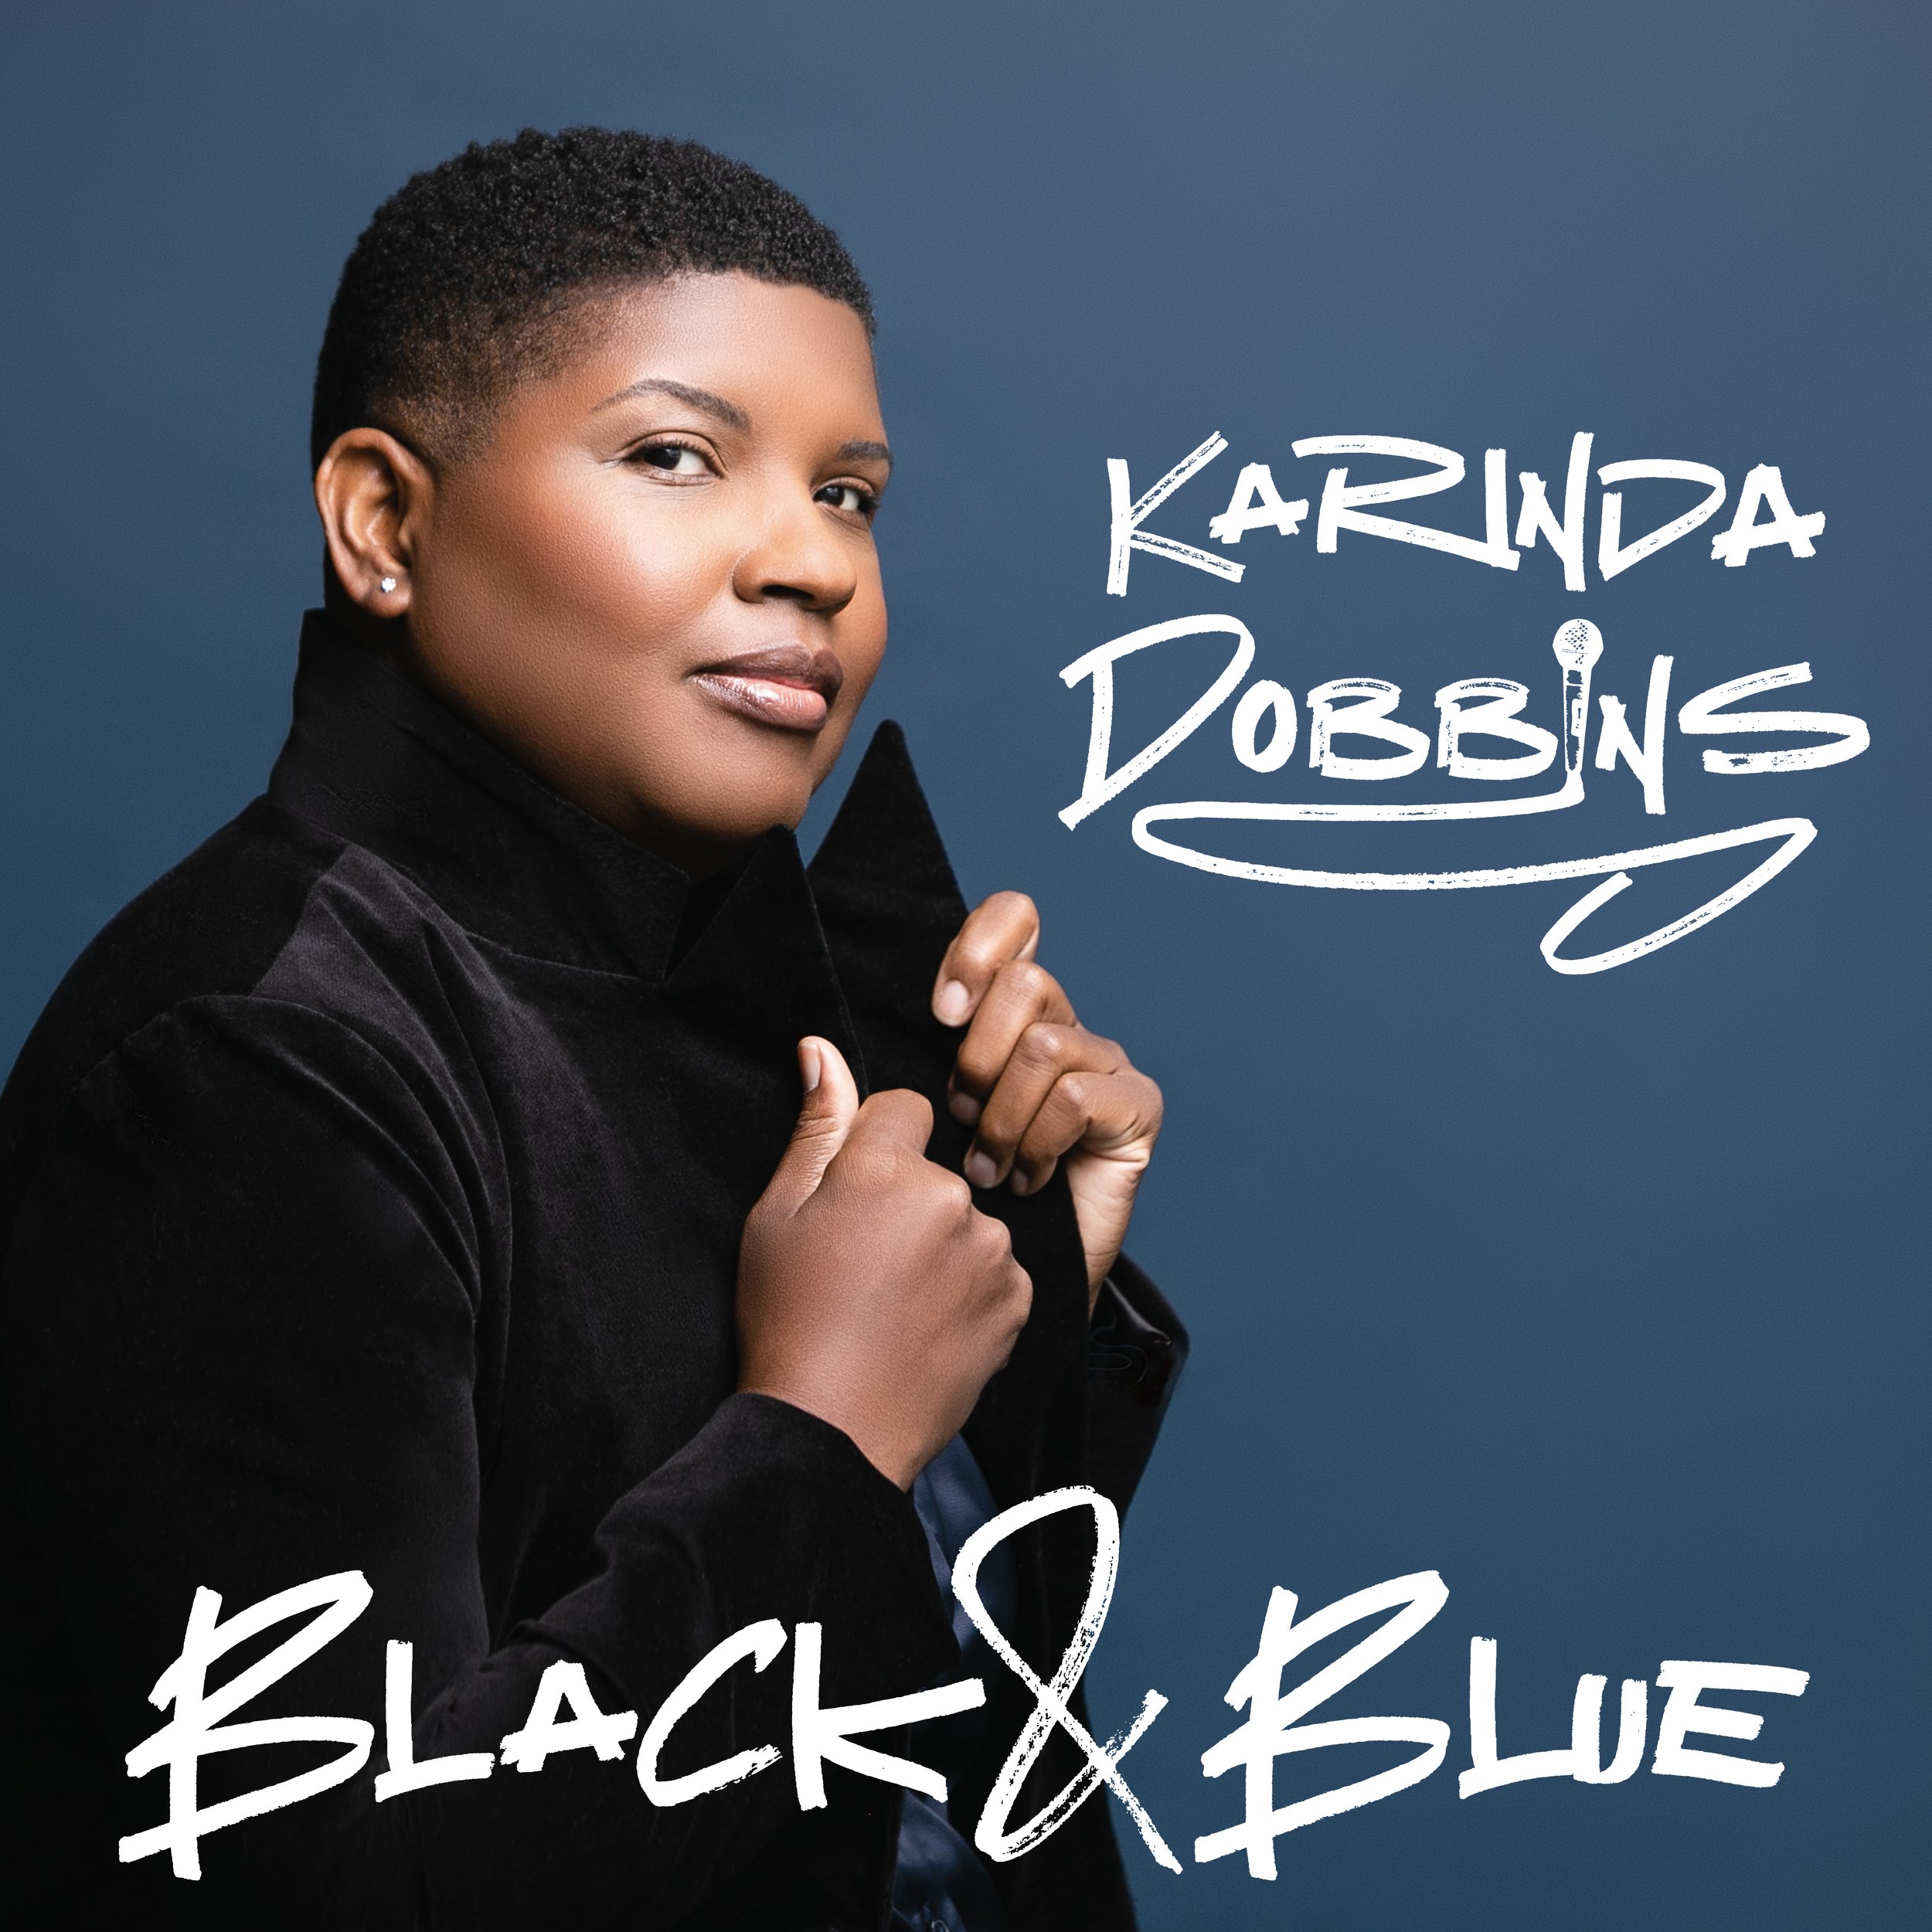 BM073 - Karinda Dobbins - Black & Blue (6000x6000) 300dpi.jpg